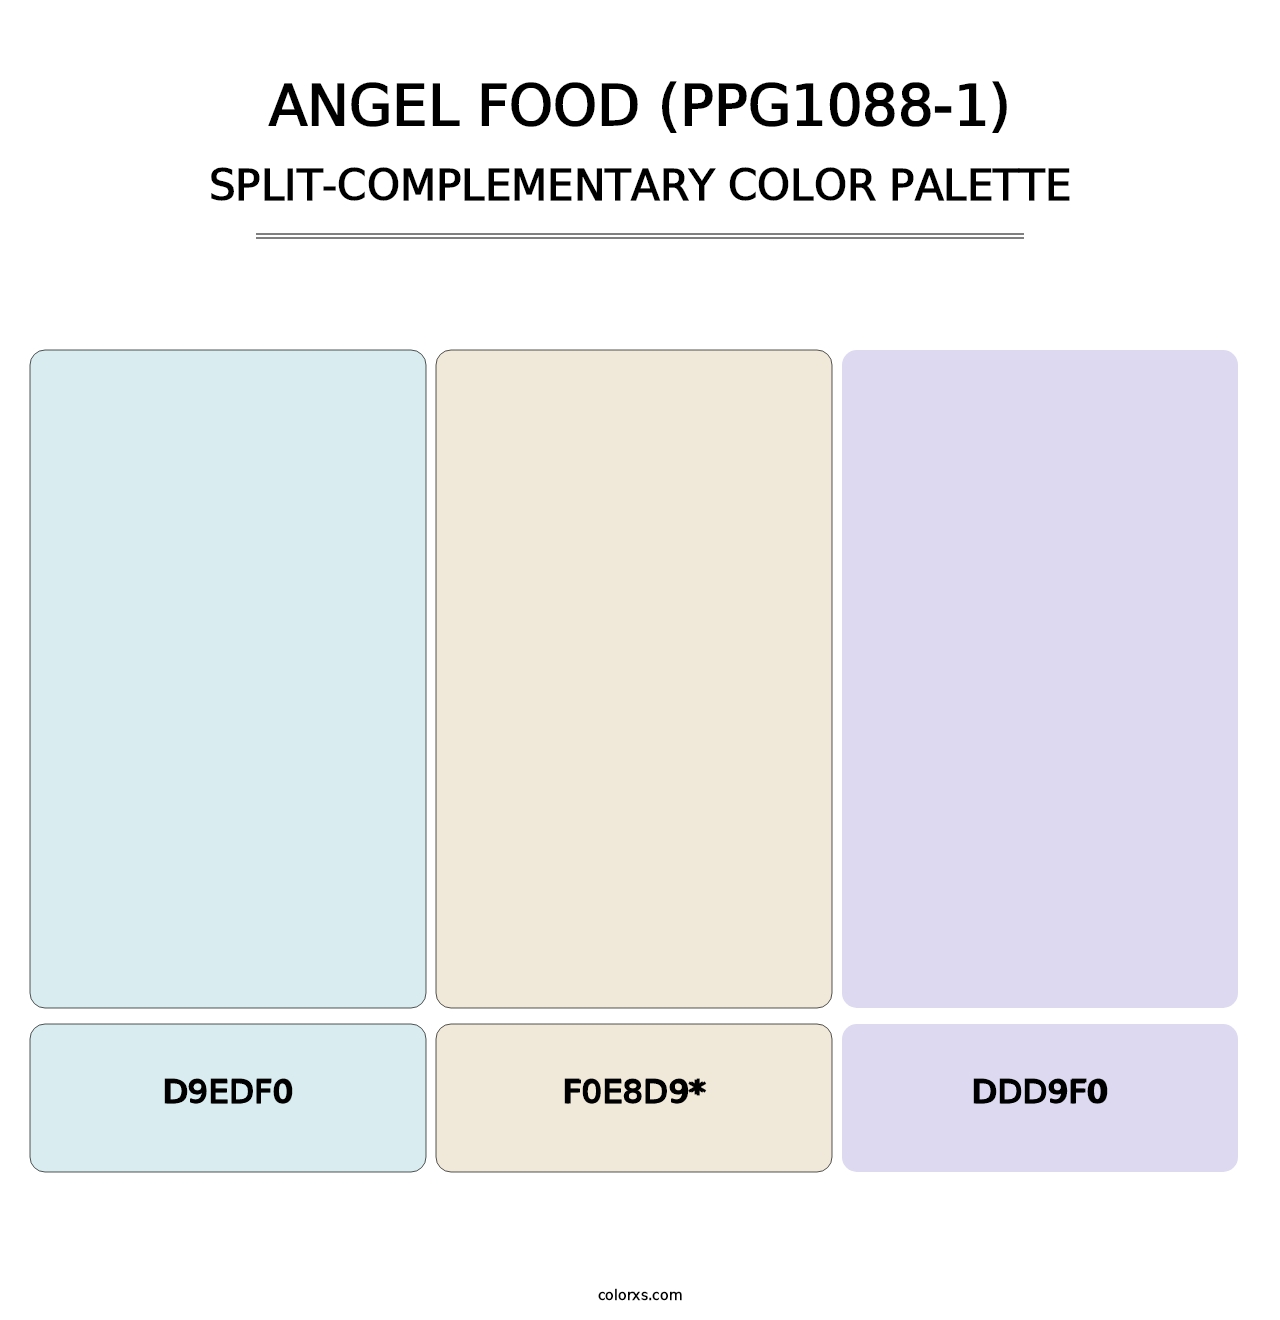 Angel Food (PPG1088-1) - Split-Complementary Color Palette